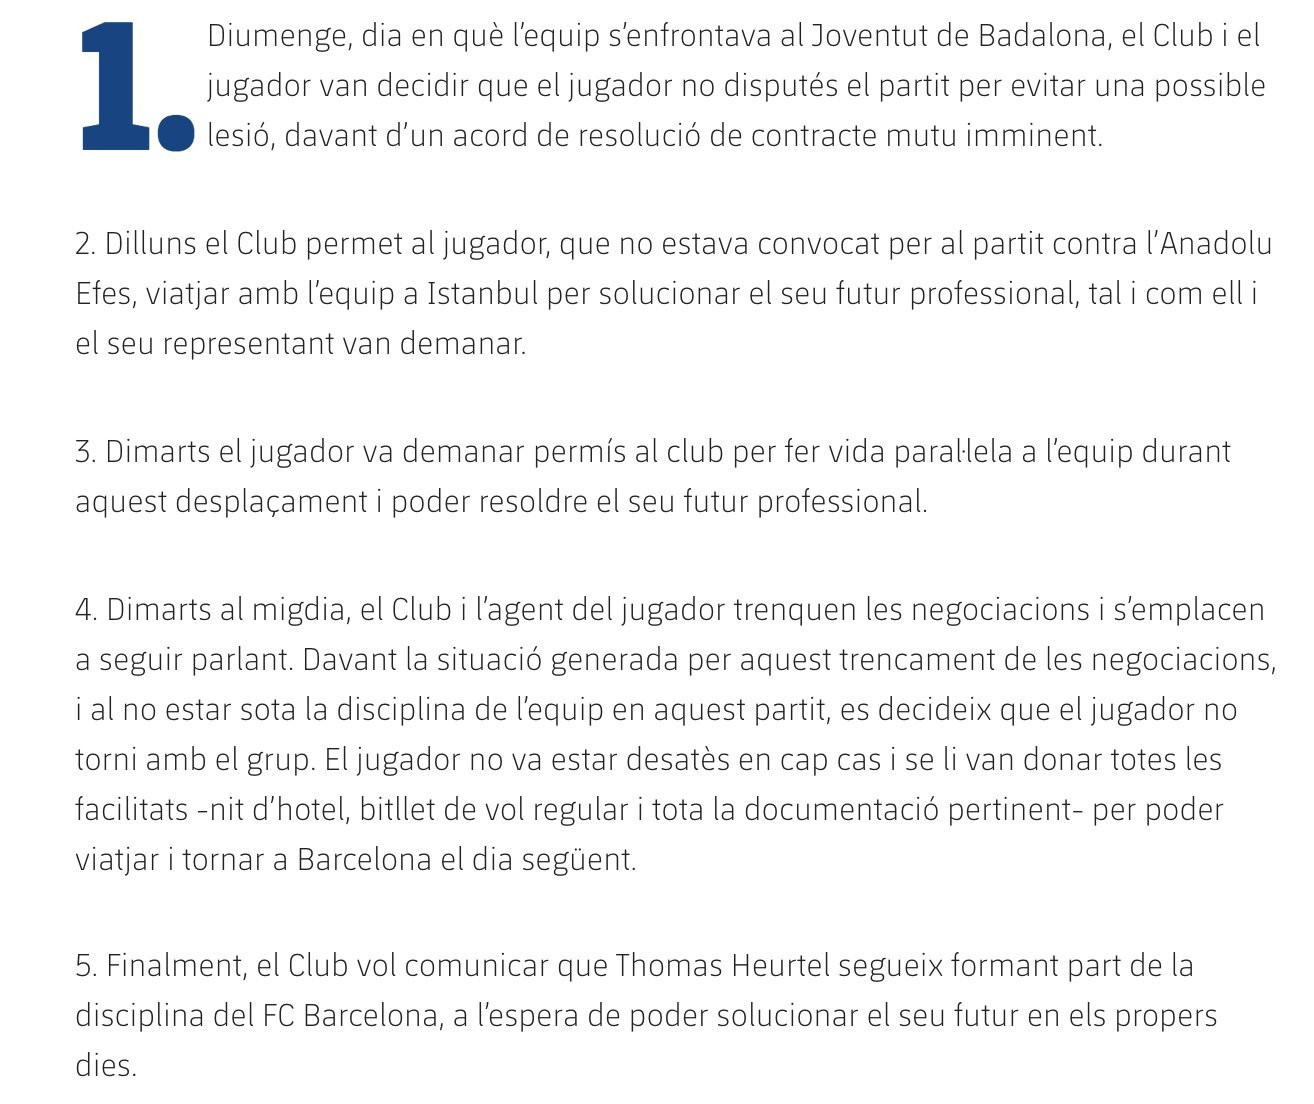 Comunicado del Barça sobre el caso Heurtel / FC Barcelona